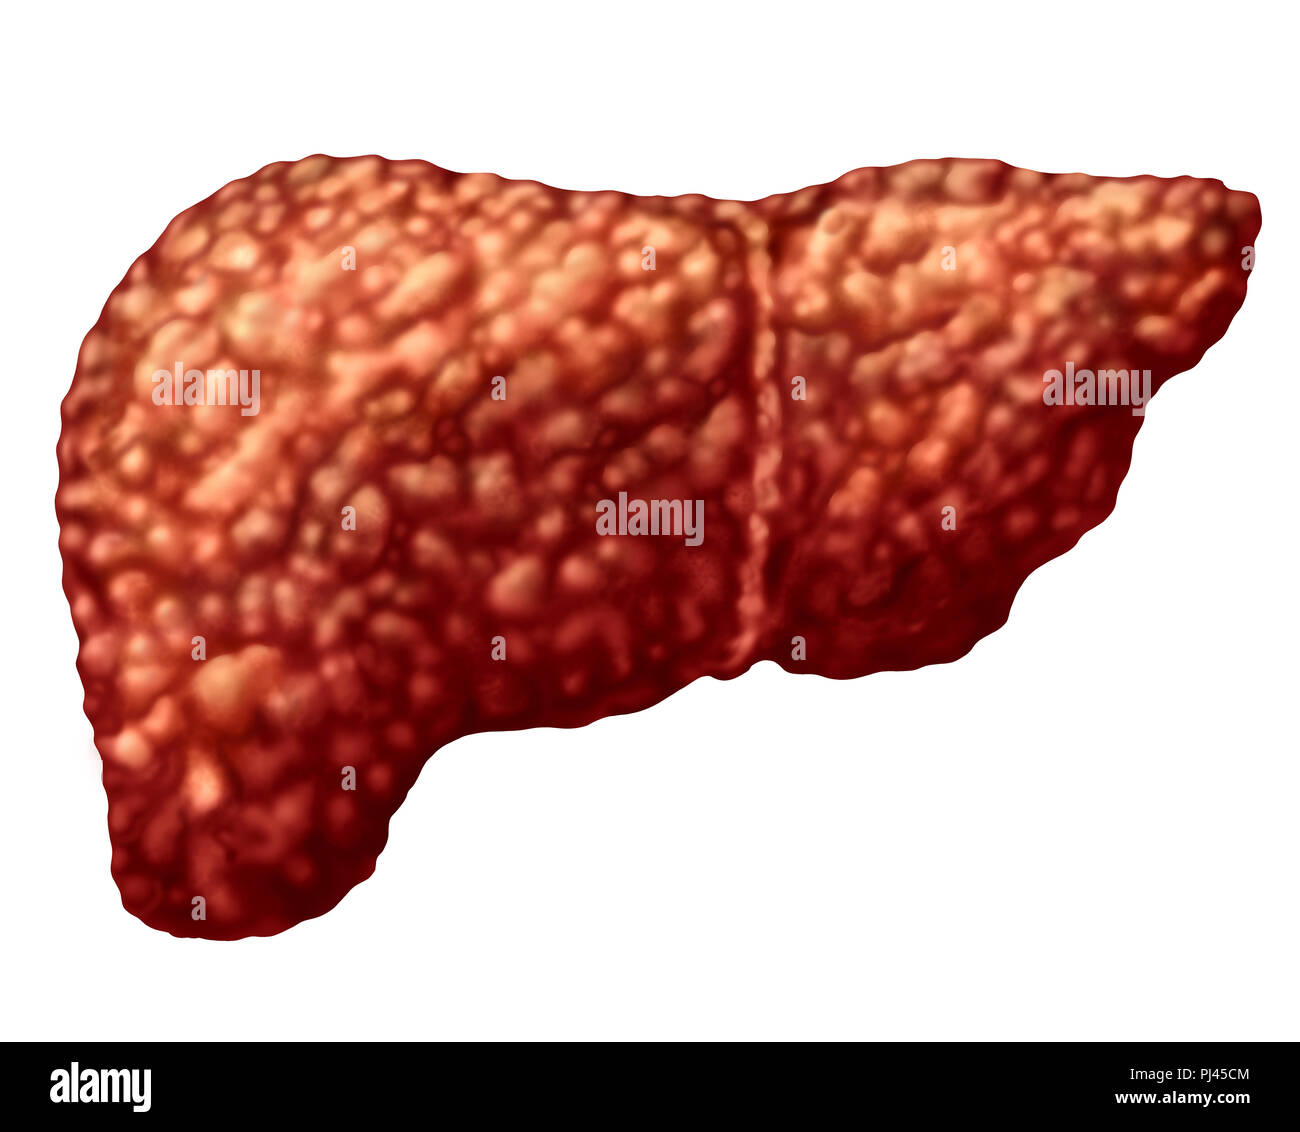 Hígado graso o esteatosis hepática parte del cuerpo aislado en blanco como un concepto médico de atención de salud del sistema digestivo Anatomía y órgano vital. Foto de stock